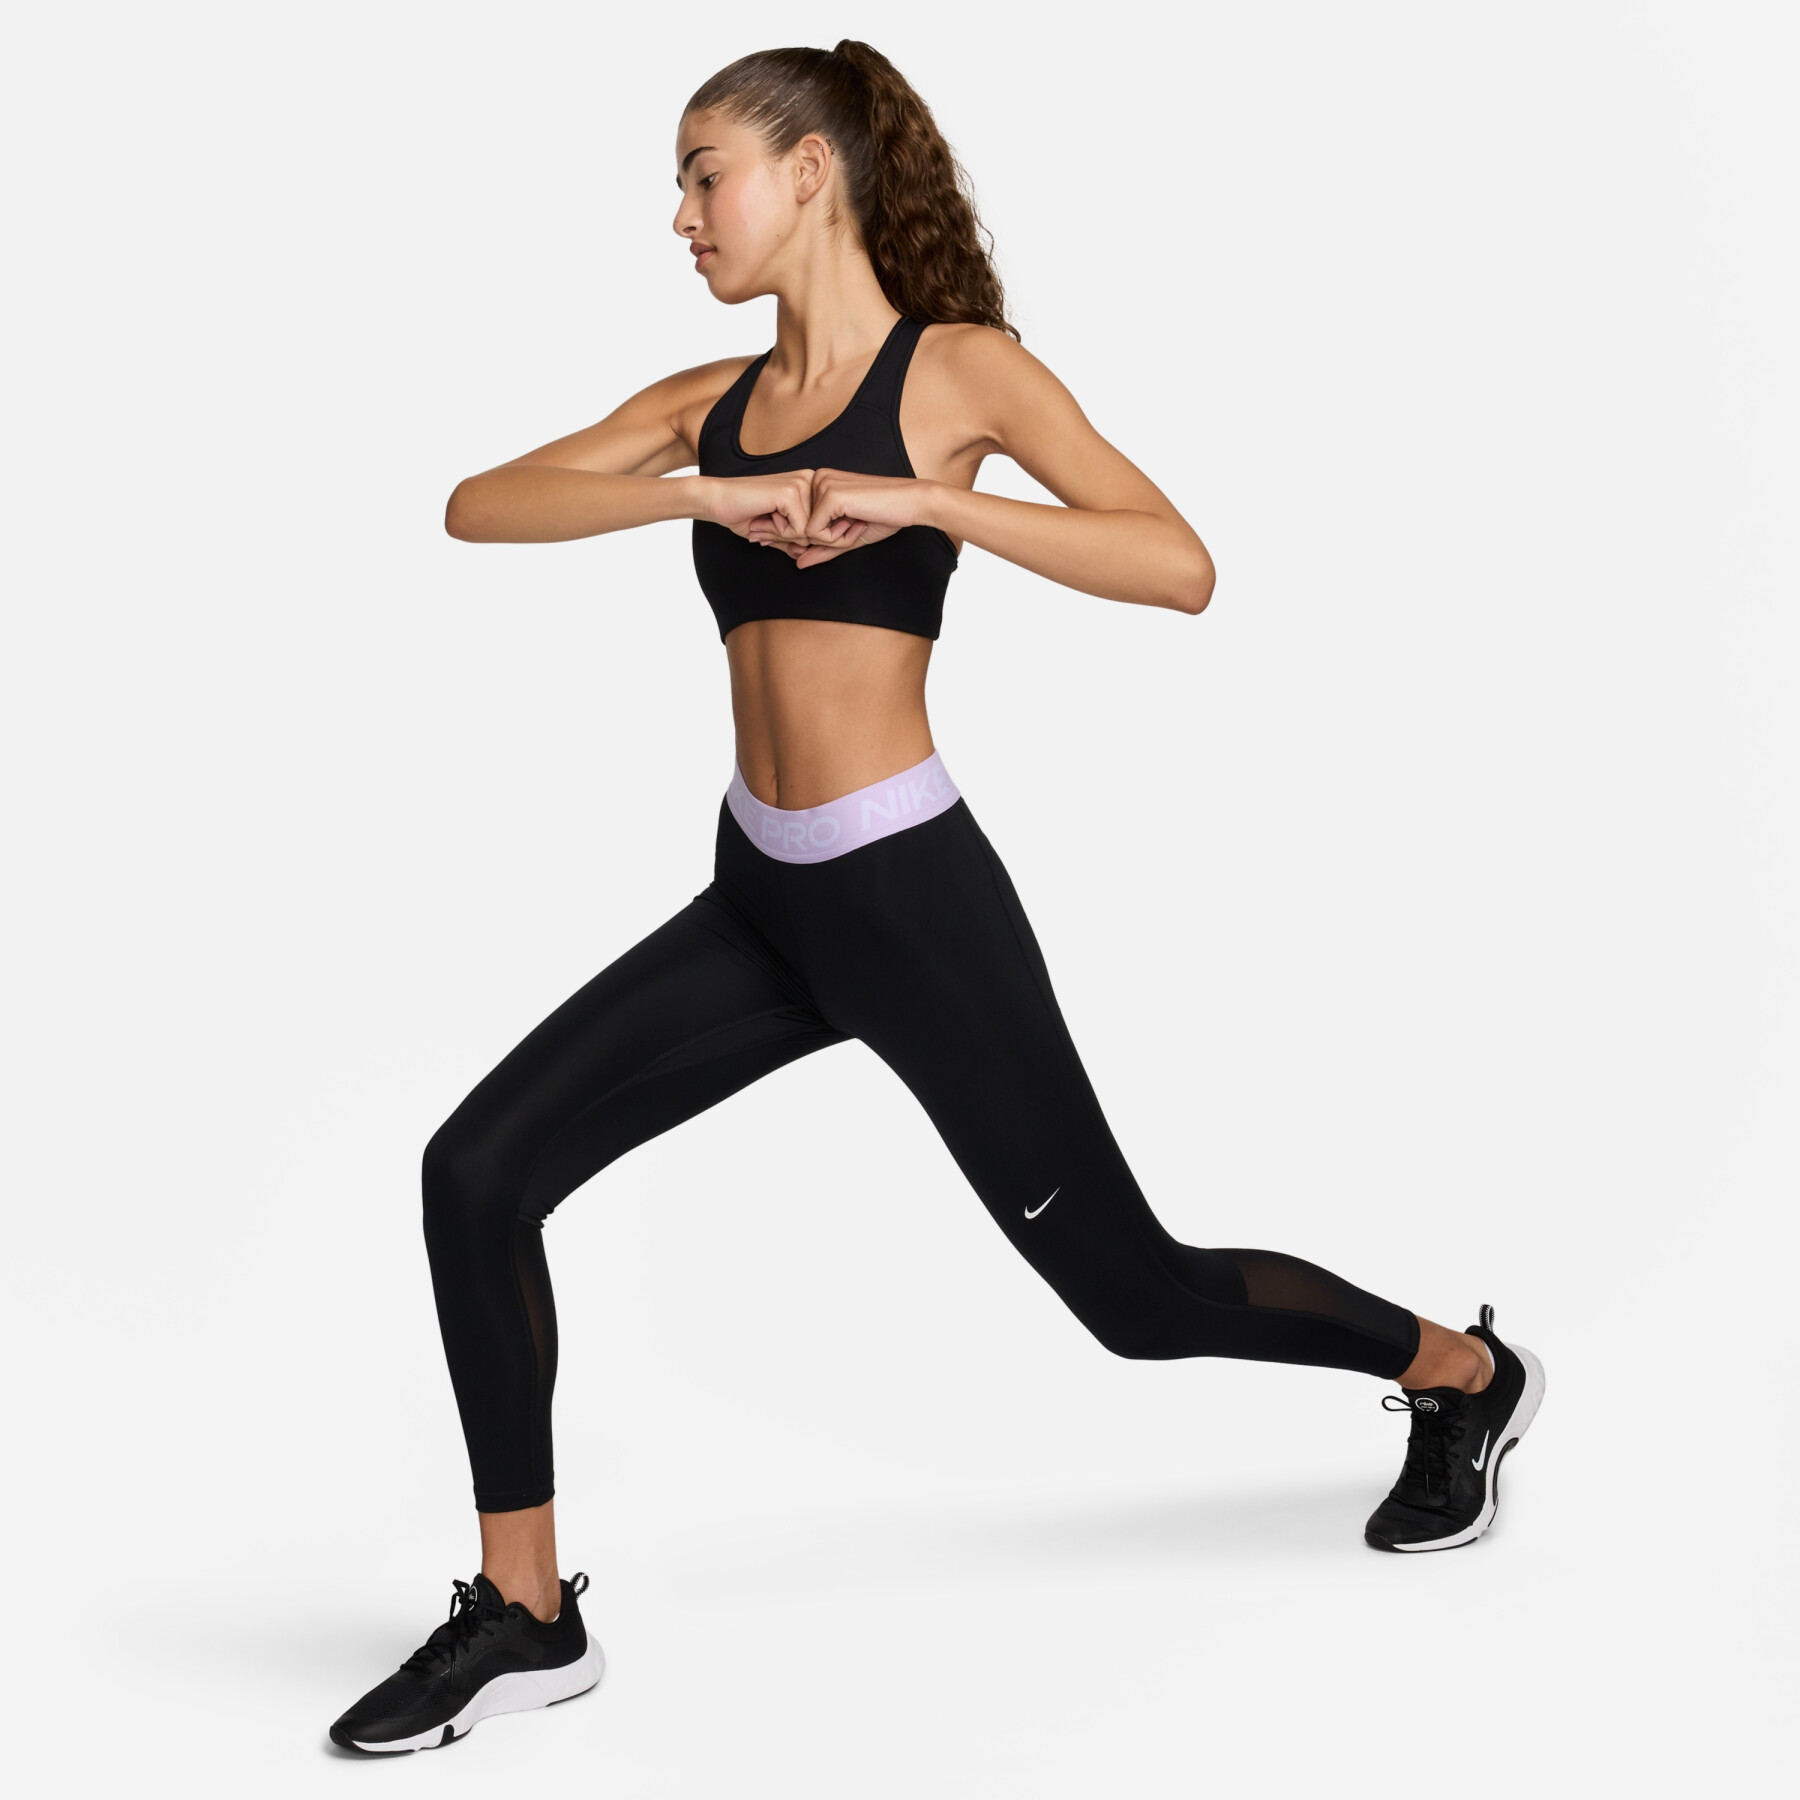 Legging 7/8 femme Nike Pro 365